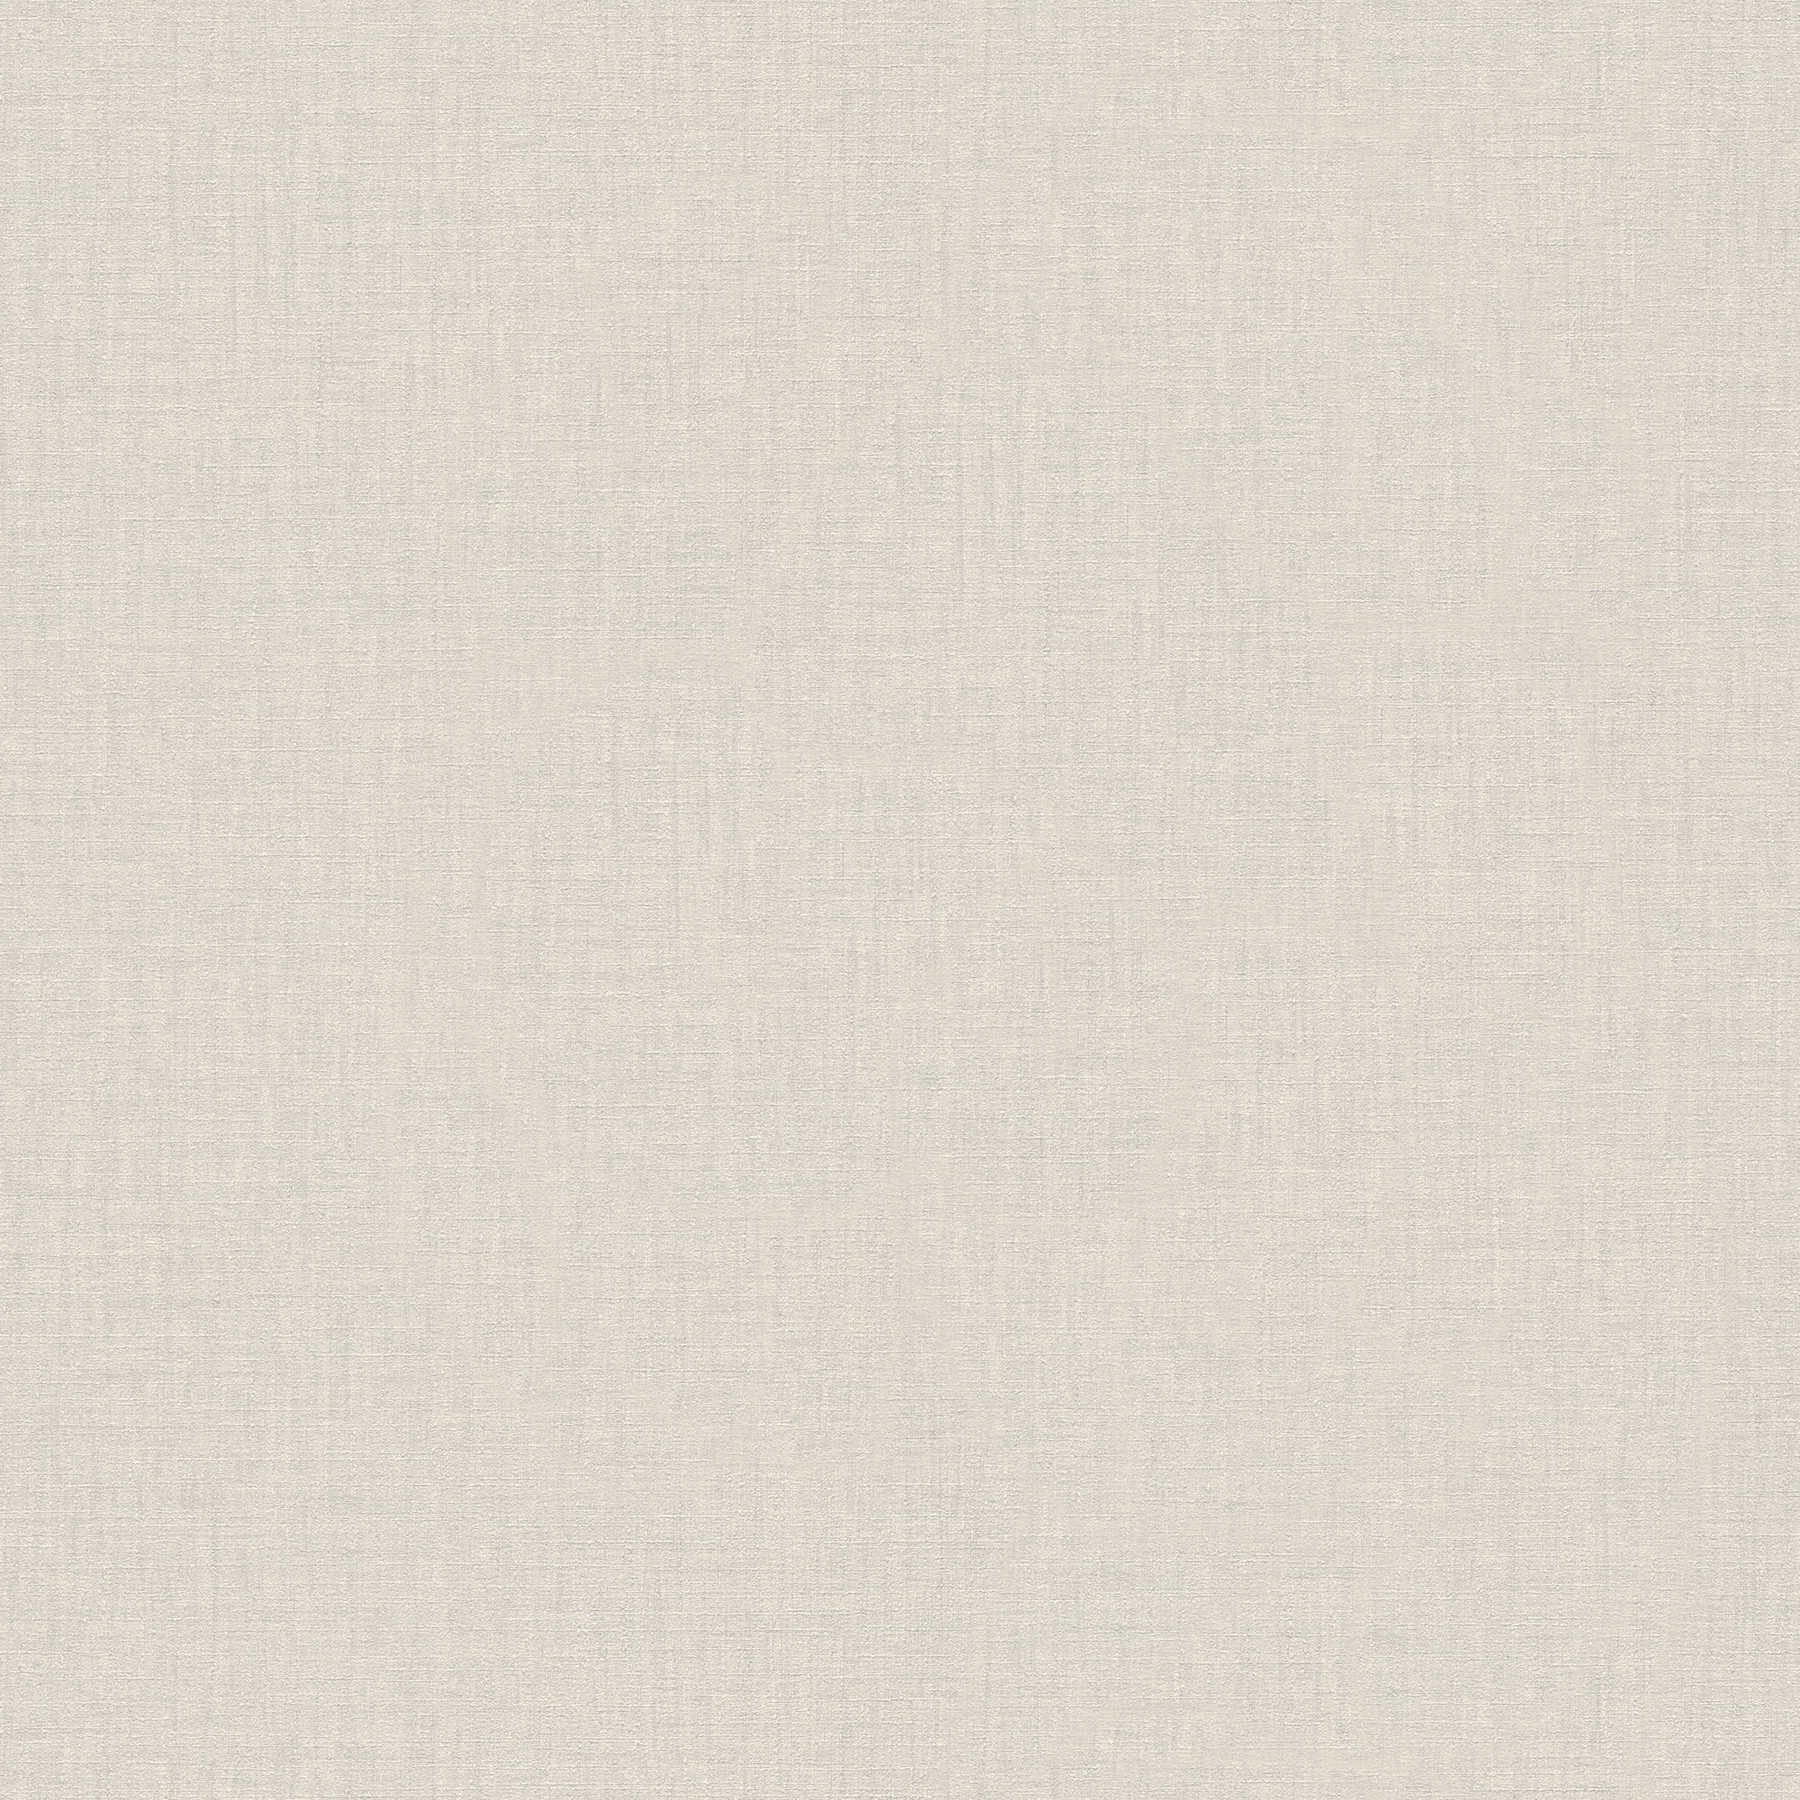 VERSACE Eenheidsbehang - Wit gevlekt - Crème, Wit, Grijs
